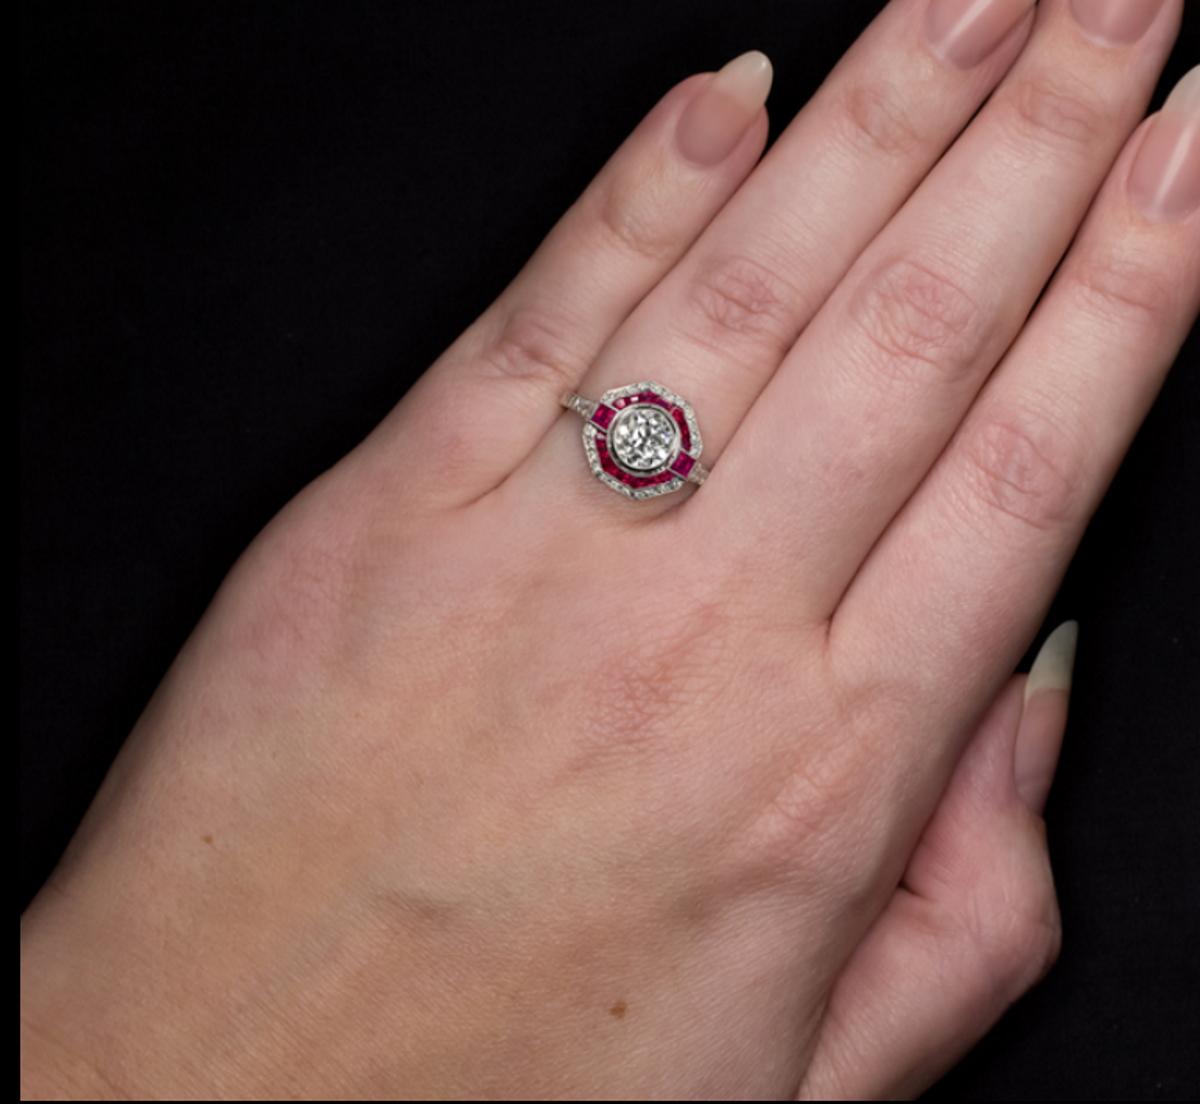 Schöner Ring mit einem erstaunlichen Diamanten im alten europäischen Schliff mit einem Gewicht von 1.02 ct. Der Rahmen besteht aus Platin und ist mit Rubinen besetzt. Der Mittelstein wurde in den 1920er und 1930er Jahren von Hand geschliffen.

Der